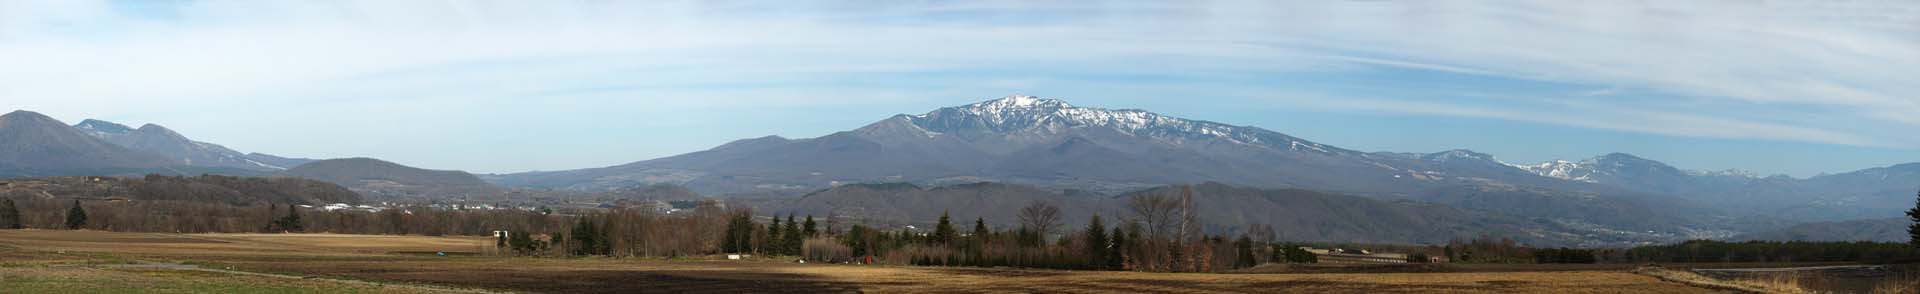 fotografia, materiale, libero il panorama, dipinga, fotografia di scorta,Tsumagoimura, Neve, coltivi villaggio, campo, cielo blu